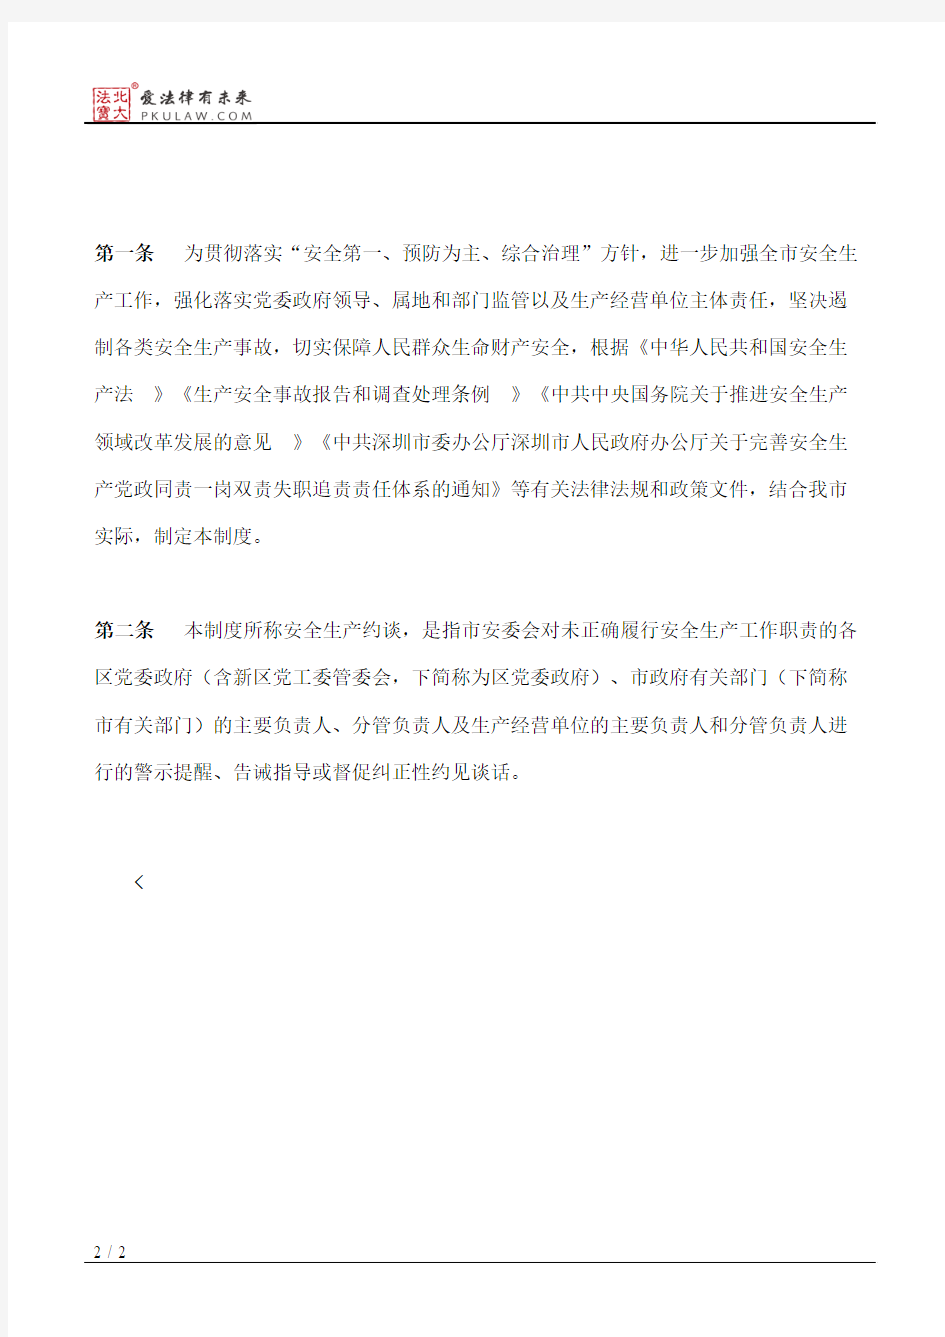 深圳市安全生产监督管理局关于印发《深圳市安全生产约谈制度》的通知